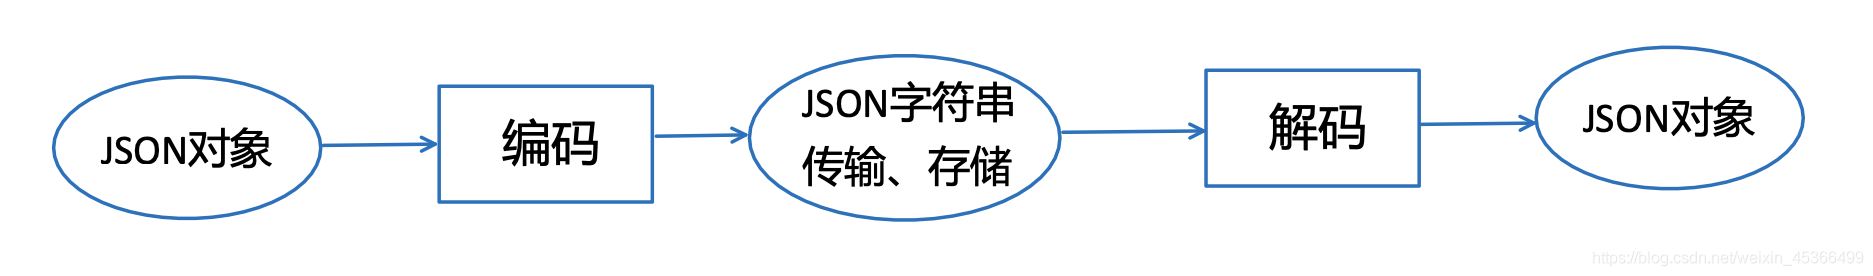 Java中JSON数据编码与解码